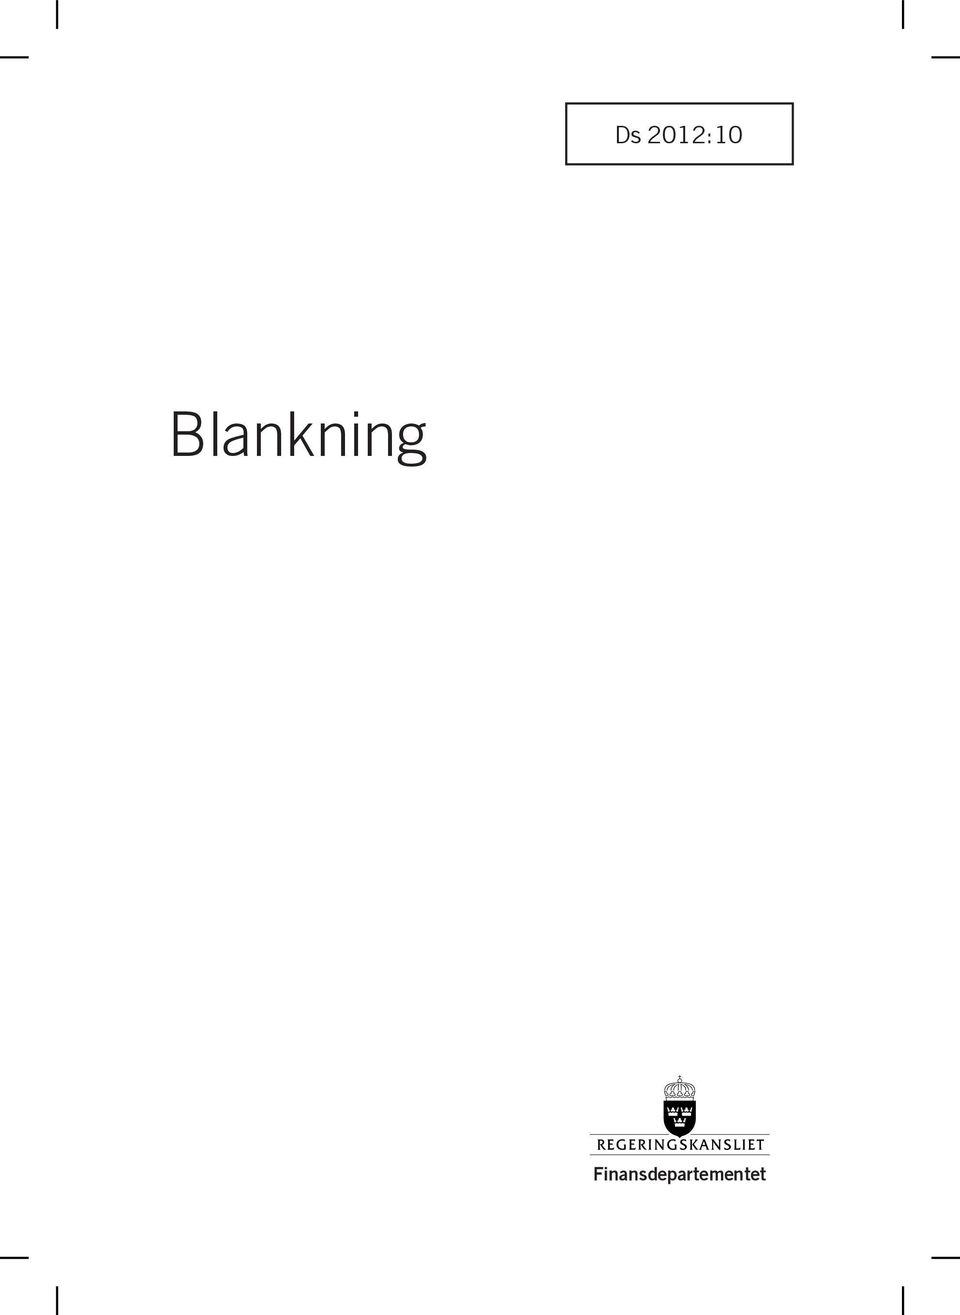 Blankning